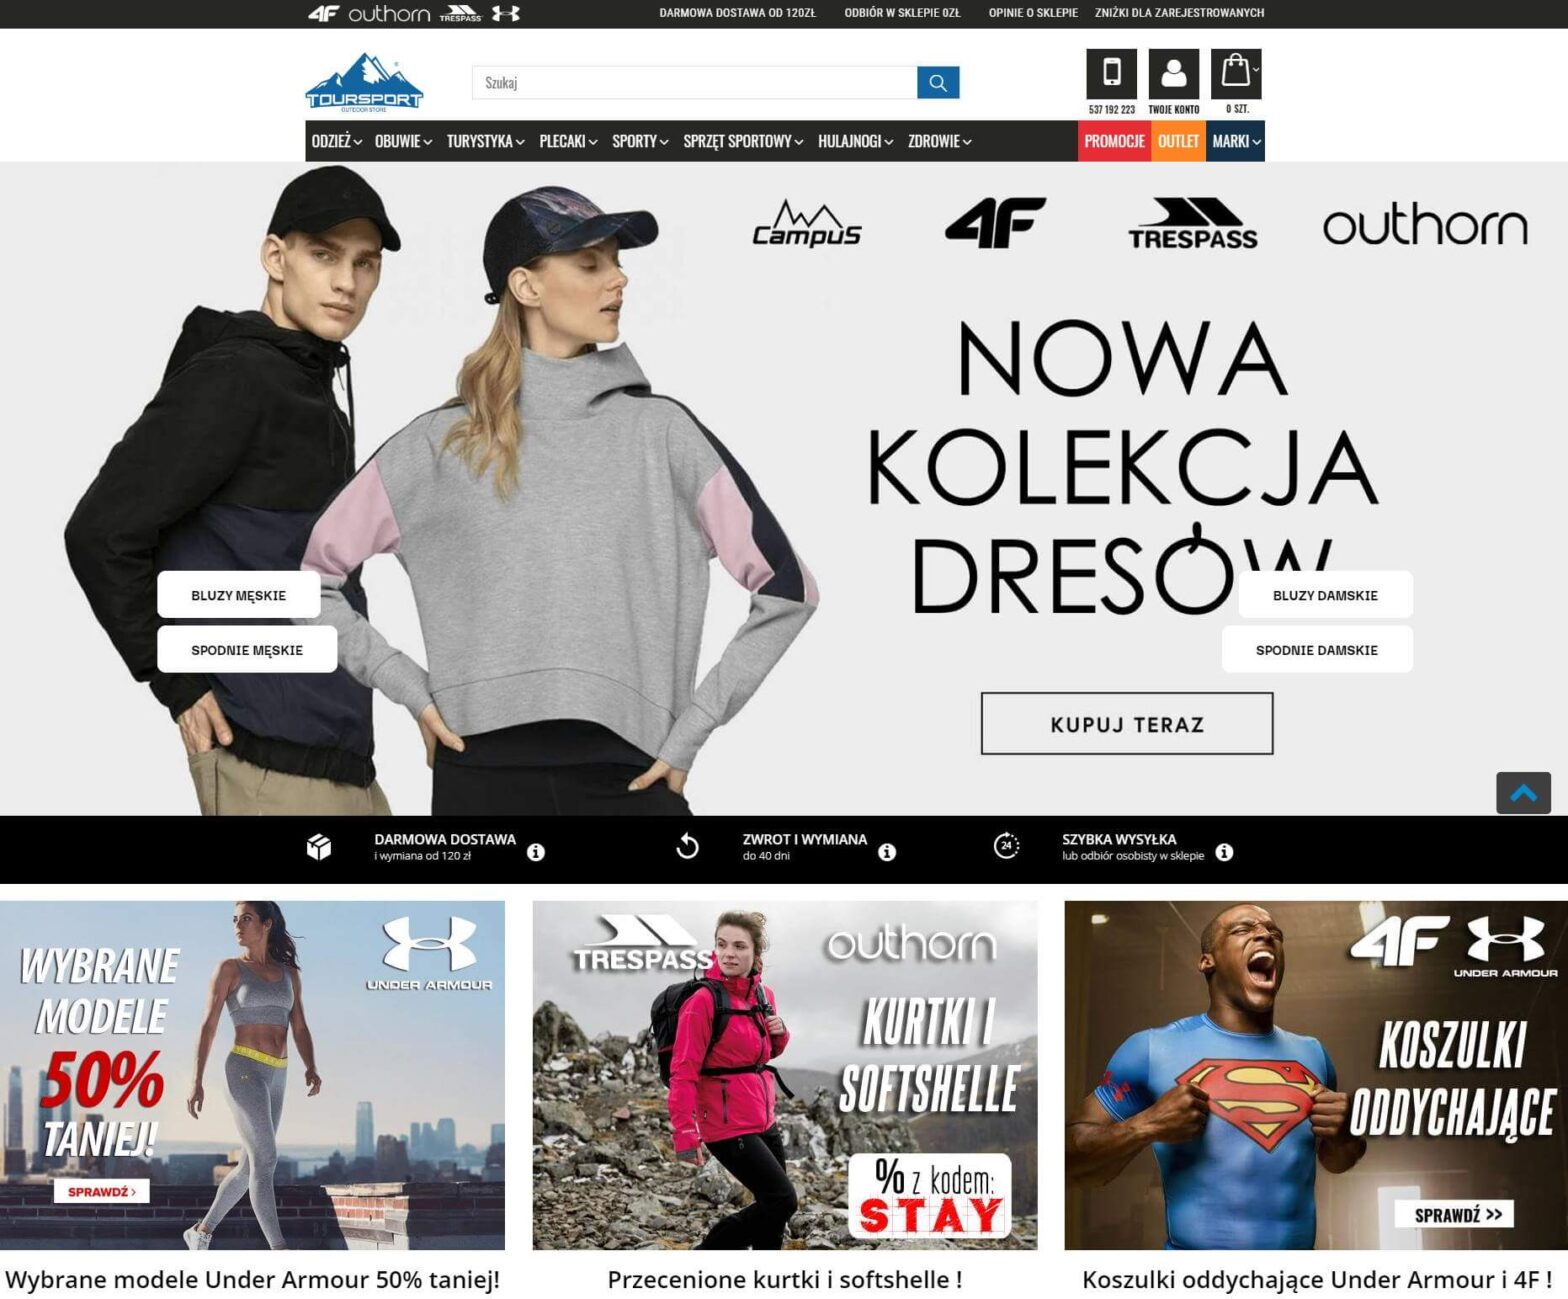 toursport.pl - sklep z markową odzieżą turystyczną i sportową